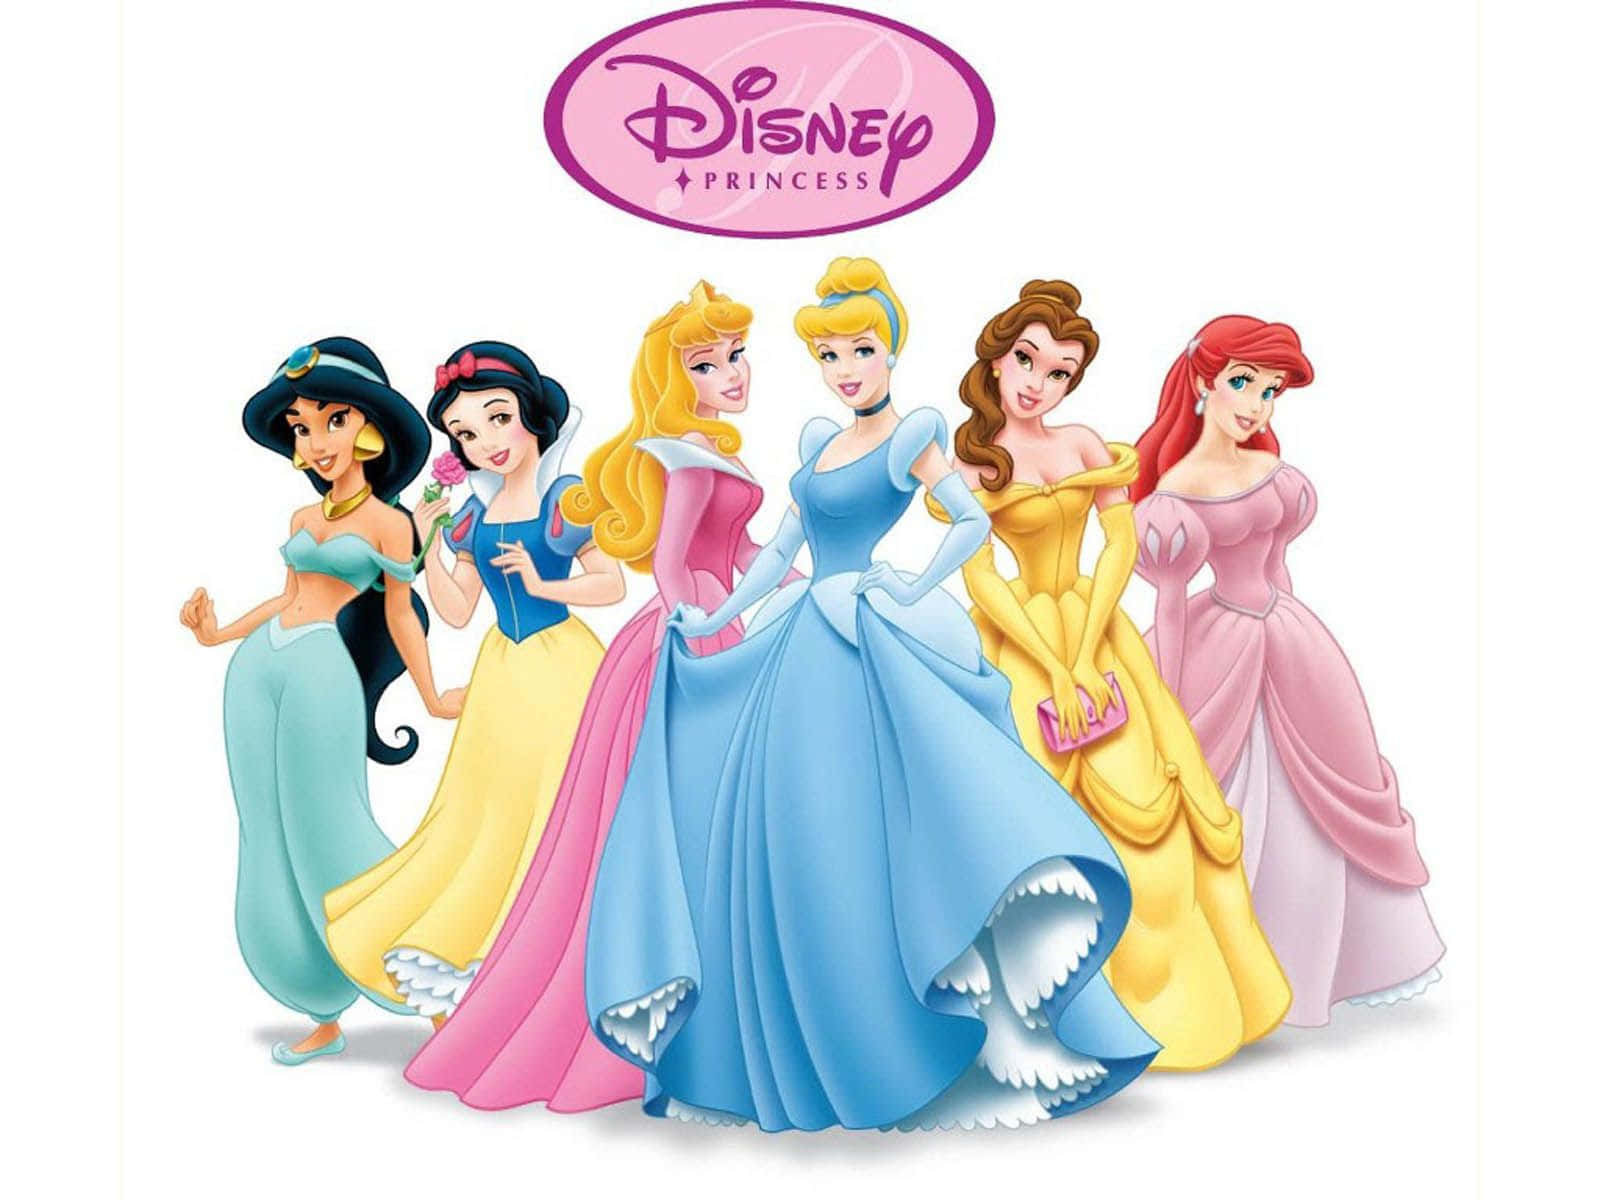 Immaginedelle Vesti Minimaliste Delle Principesse Disney.